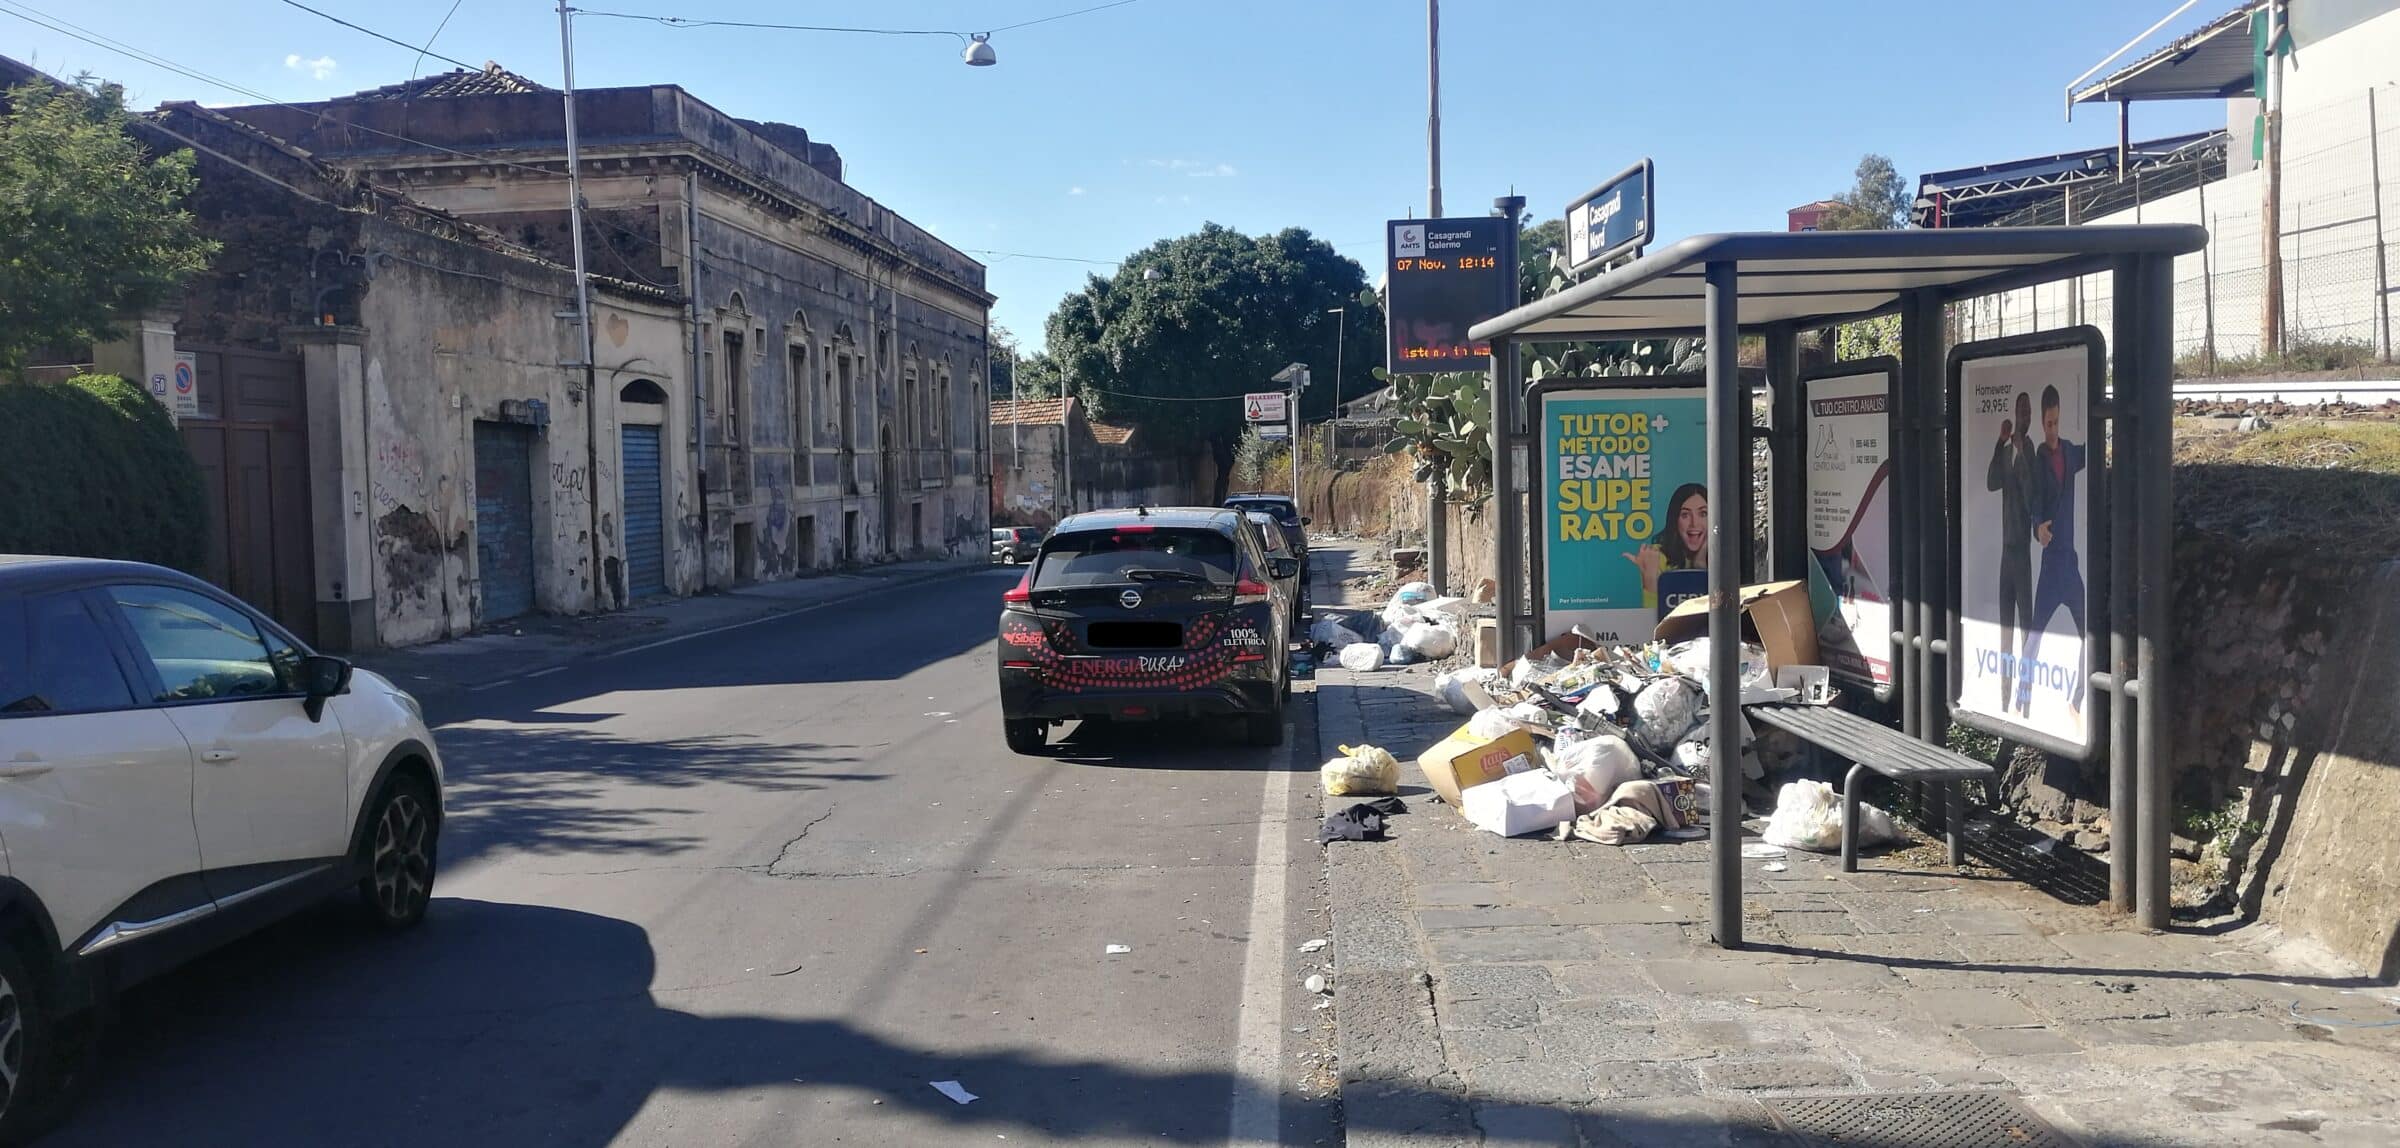 Raccolta differenziata e discariche abusive nel IV Municipio a Catania